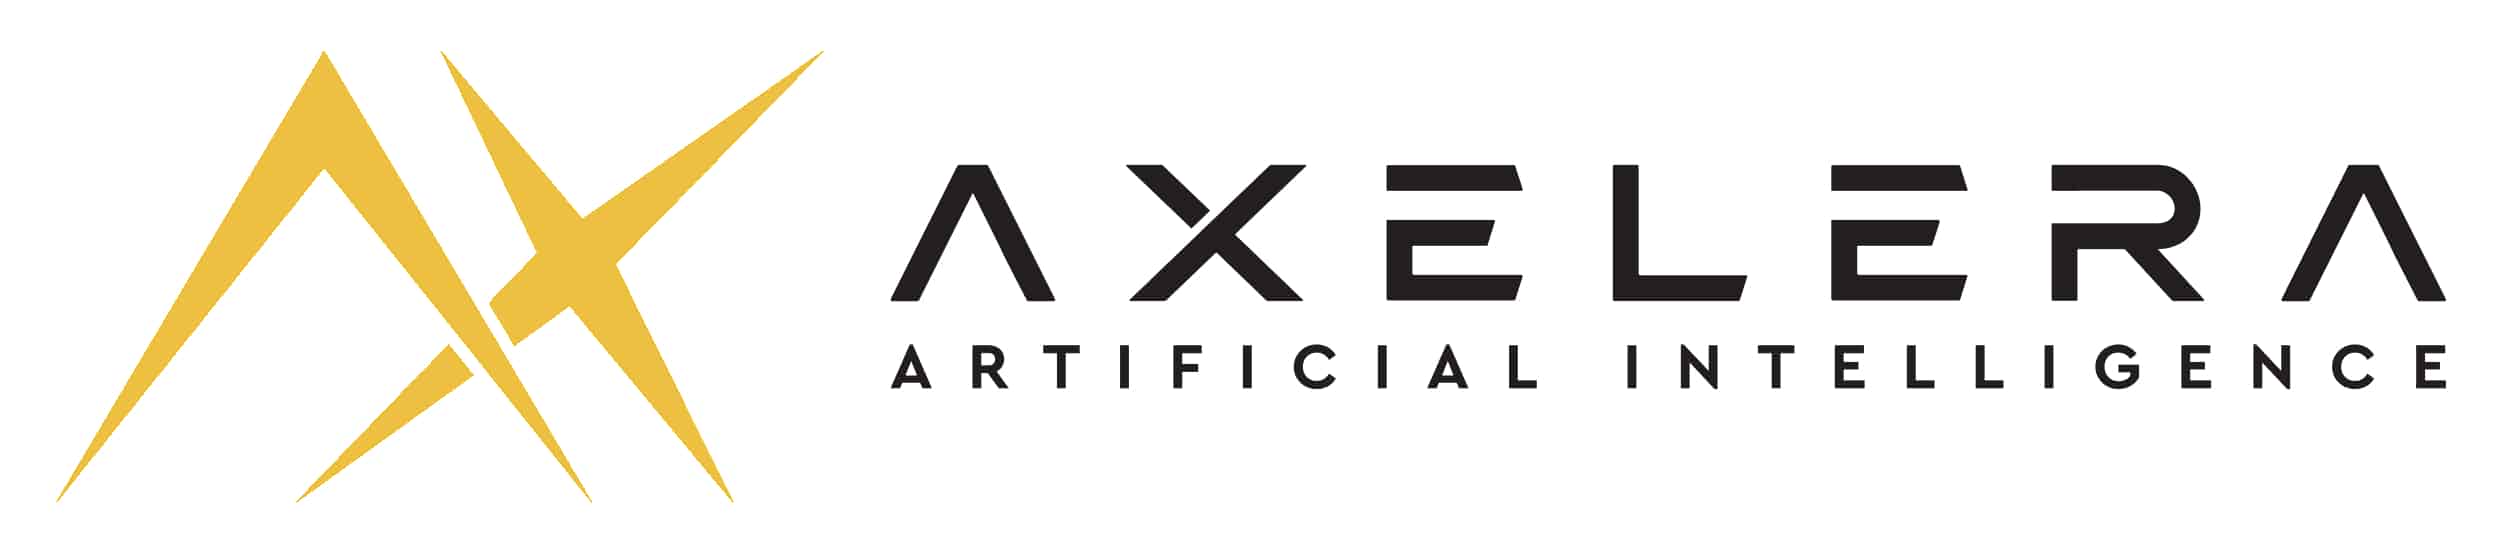 Axelera_AI_logo